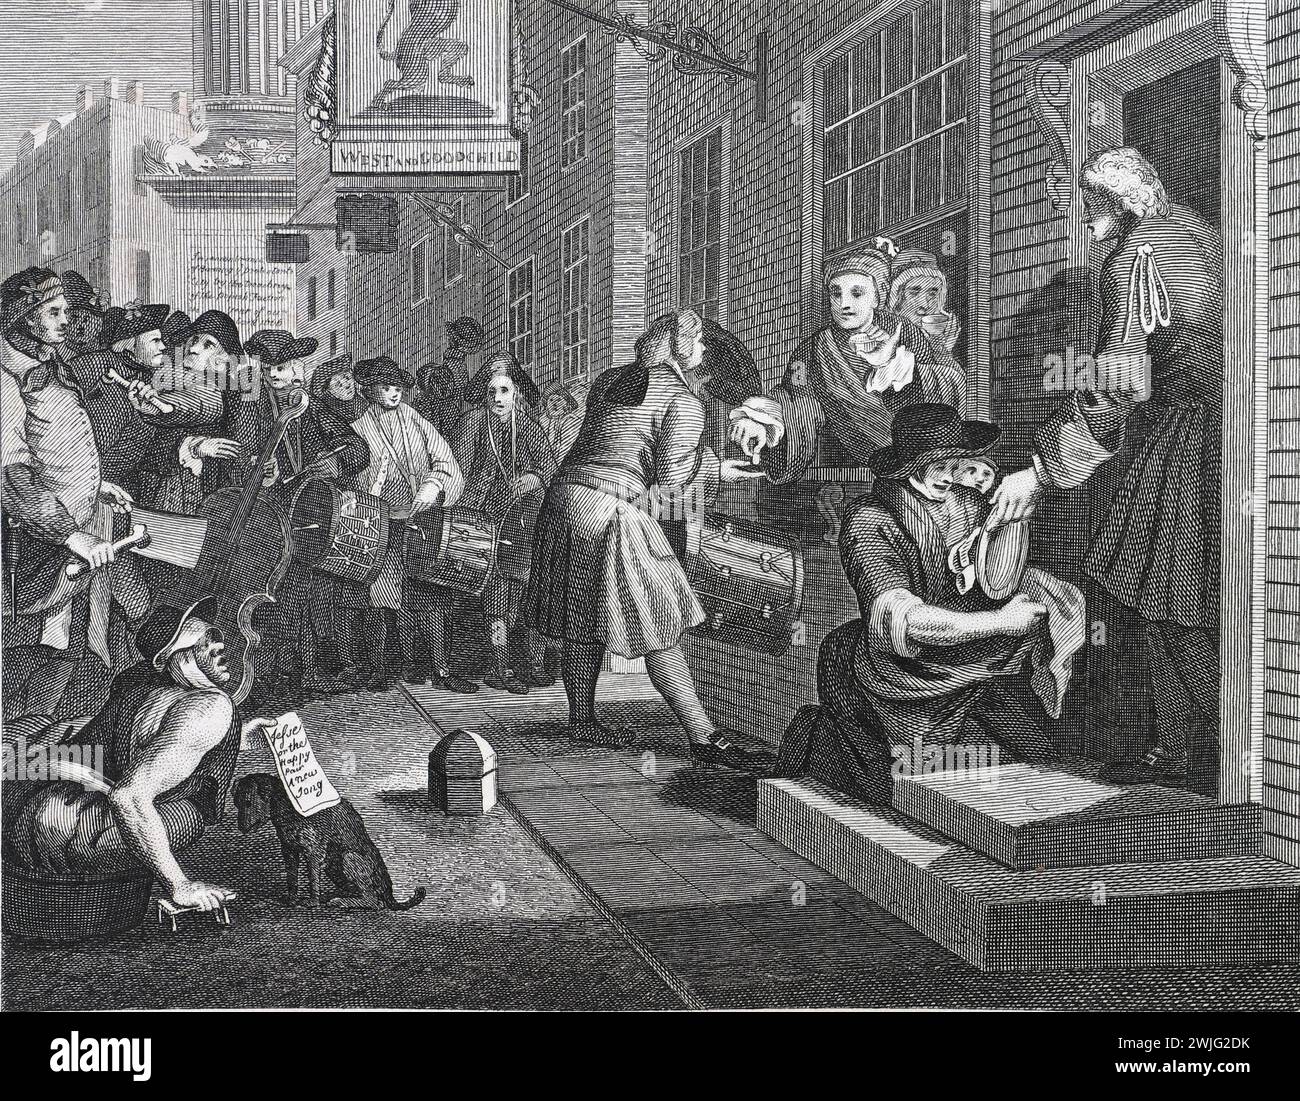 Illustration en noir et blanc : 'le travailleur 'Prentice hors de son temps, et marié à la fille de son Maître'. Gravure d'après William Hogarth (1697 - 1764) de sa série, "industrie et farniente". Ses premières séries d'œuvres peintes, 'The Harlot's Progress' et 'Marriage à-la-mode', qui ont ensuite été publiées sous forme de gravures, 'Industry and Fidleness' a été gravée dès le début. L'objectif de Hogarth dans cette série était d'illustrer les récompenses possibles pour travailler dur, et les pièges de ne pas le faire, un message principalement destiné aux enfants qui travaillent. Cette reproduction a été réalisée par Thomas Cook. Banque D'Images